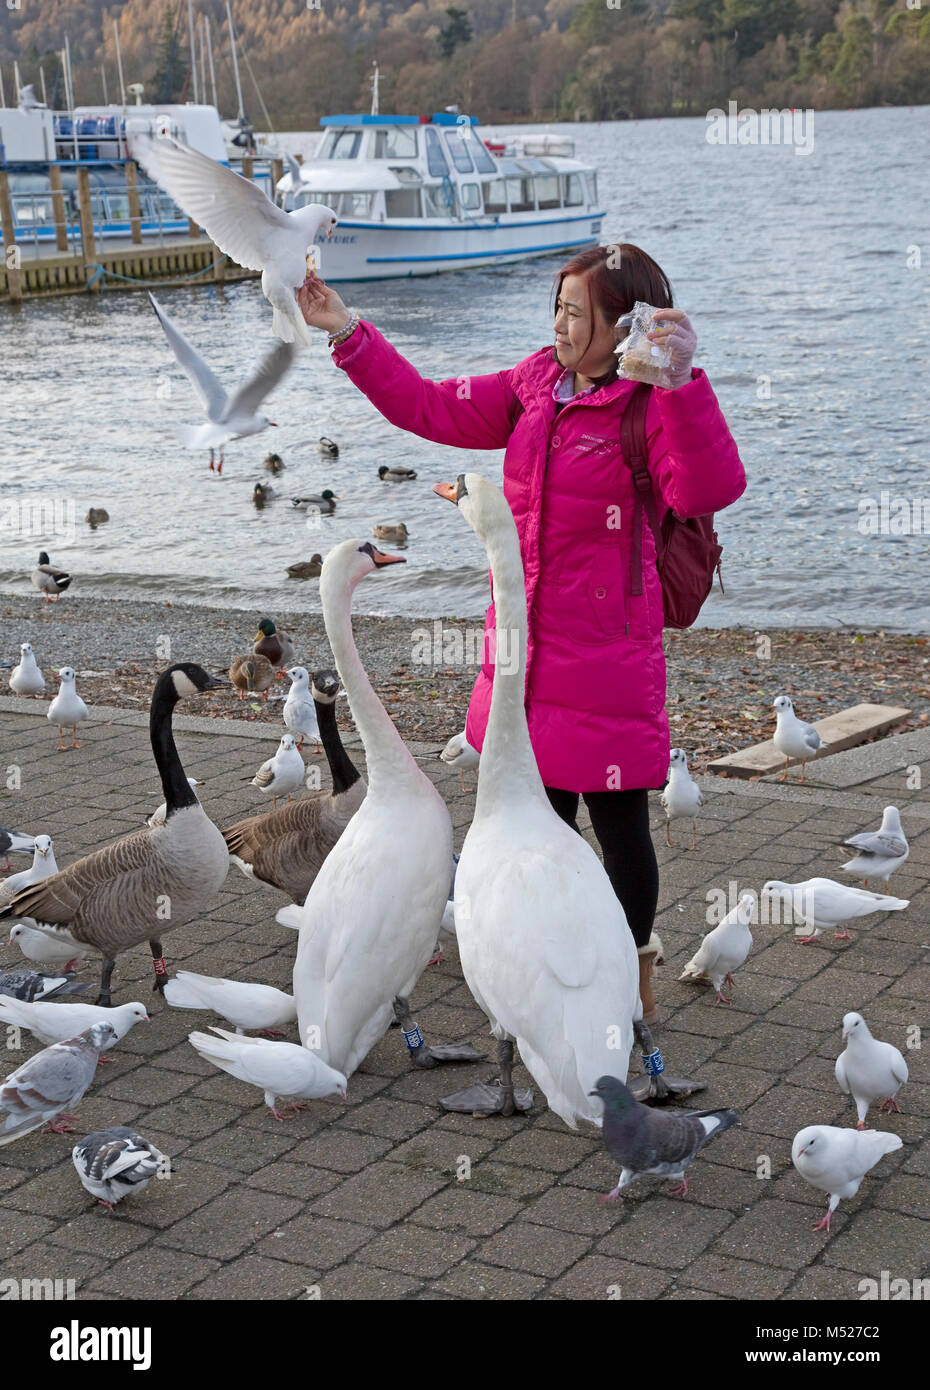 Touriste japonais nourrir les oiseaux Bowness on Windermere Cumbria UK Banque D'Images